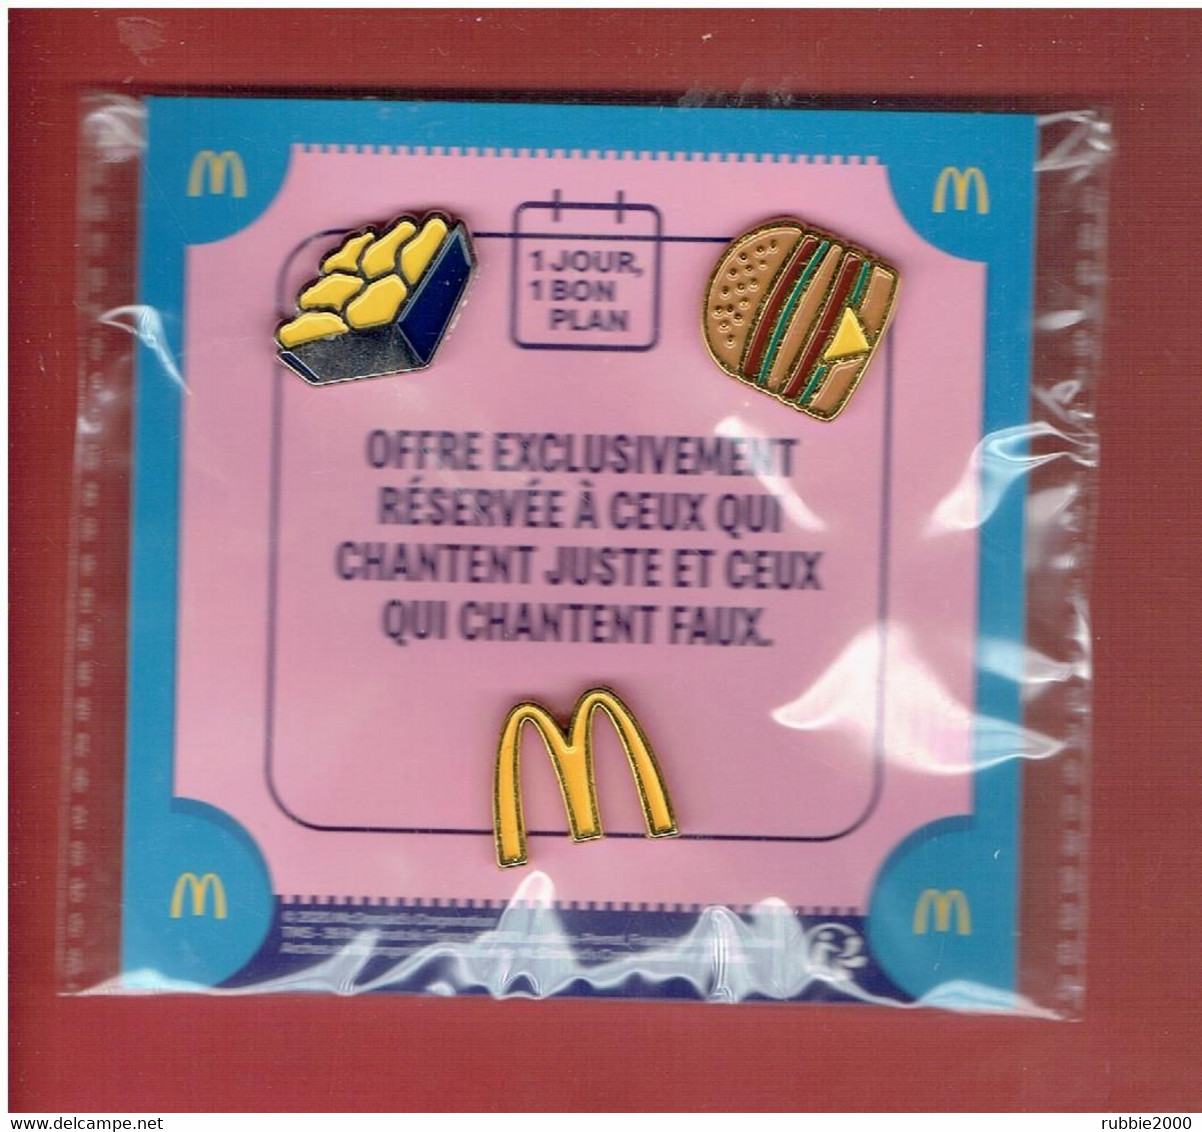 3 Pin's McDonald's 1 Jour 1 Bon Plan OFFRE EXCLUSIVE RESERVEE A CEUX QUI CHANTENT JUSTE ET CEUX QUI CHANTENT FAUX - McDonald's